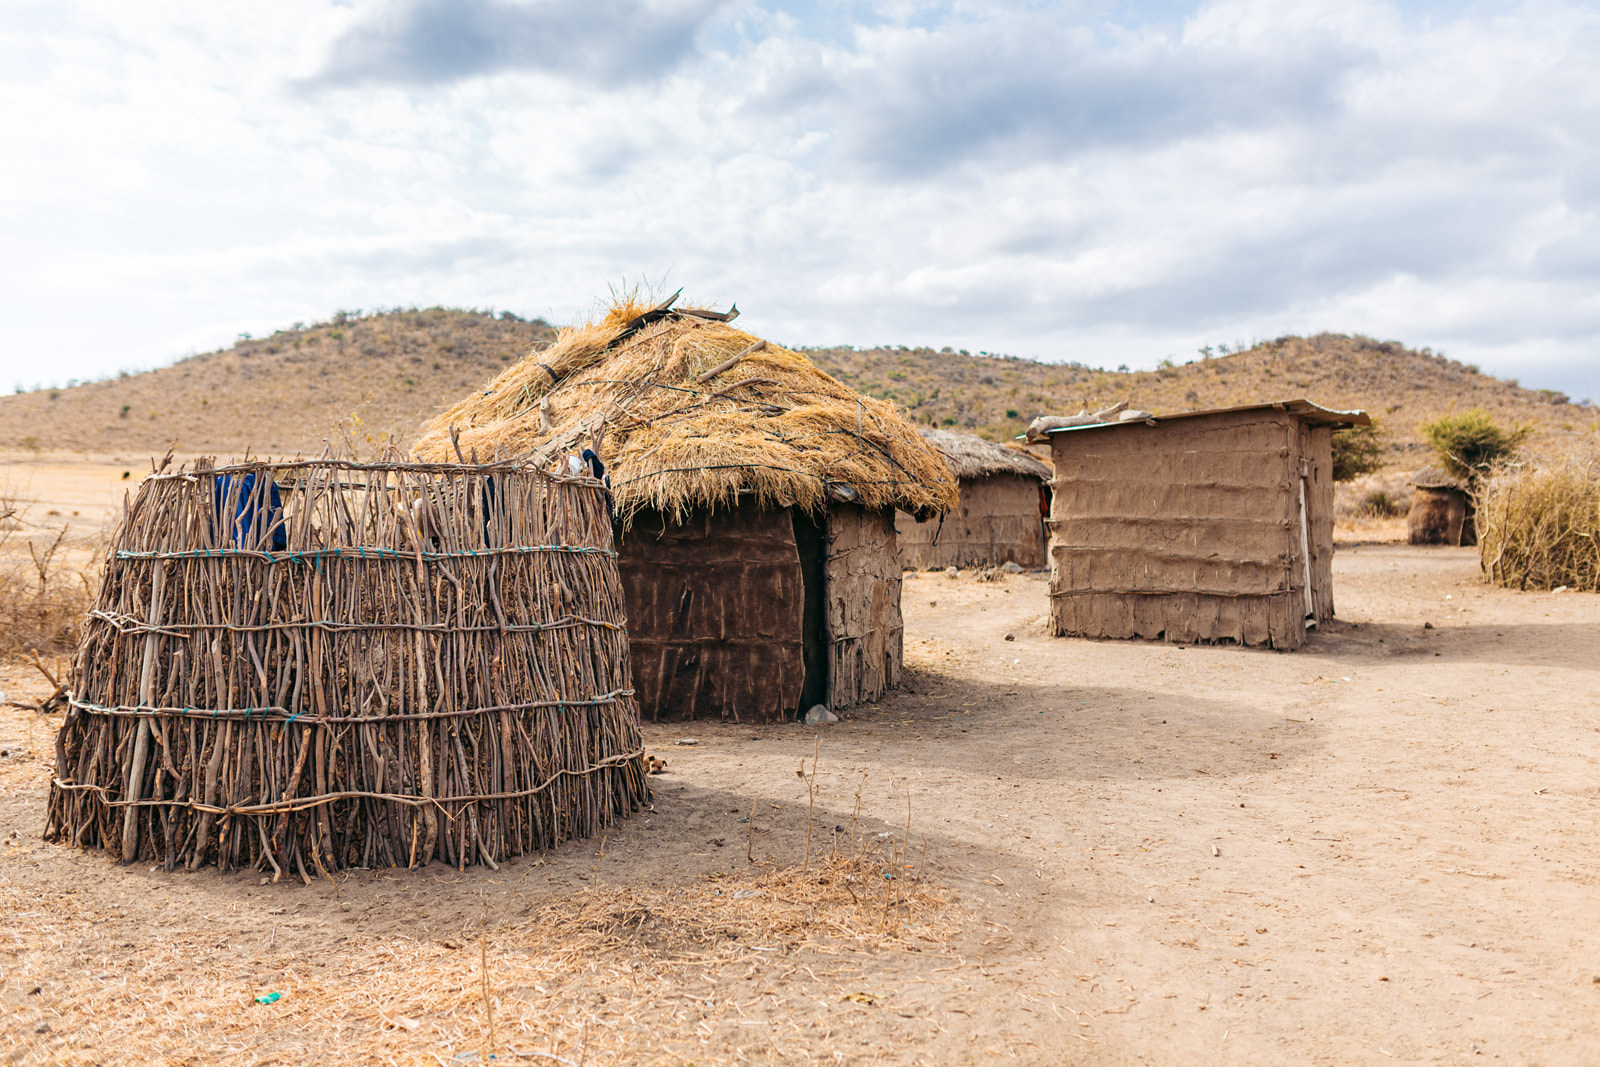 Hütten aus Stroh, Zweigen und Lehm in einem Dorf in Tansania